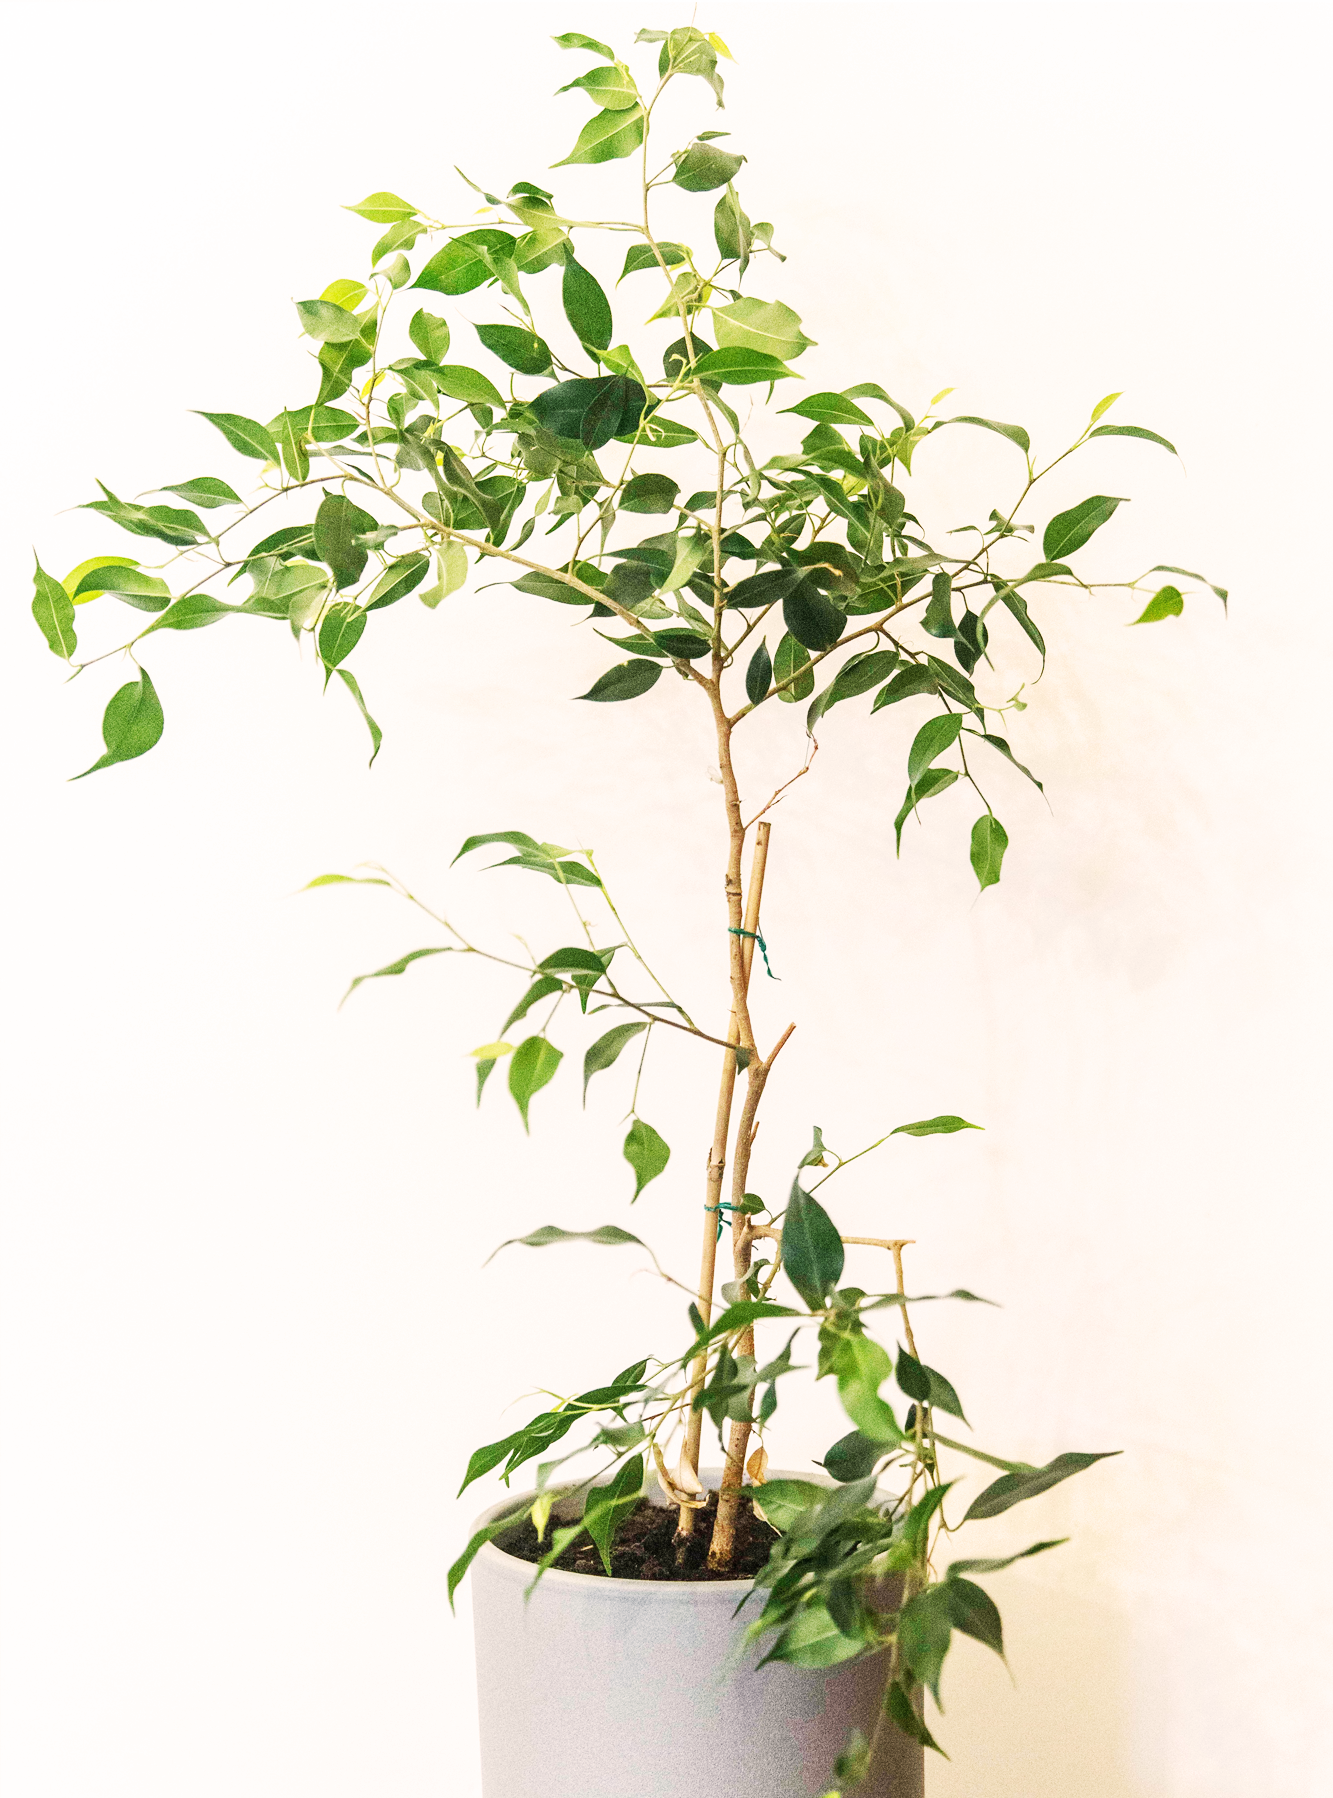 Ficus Benjamina kamerplant gezaaid met kamerplant zaden